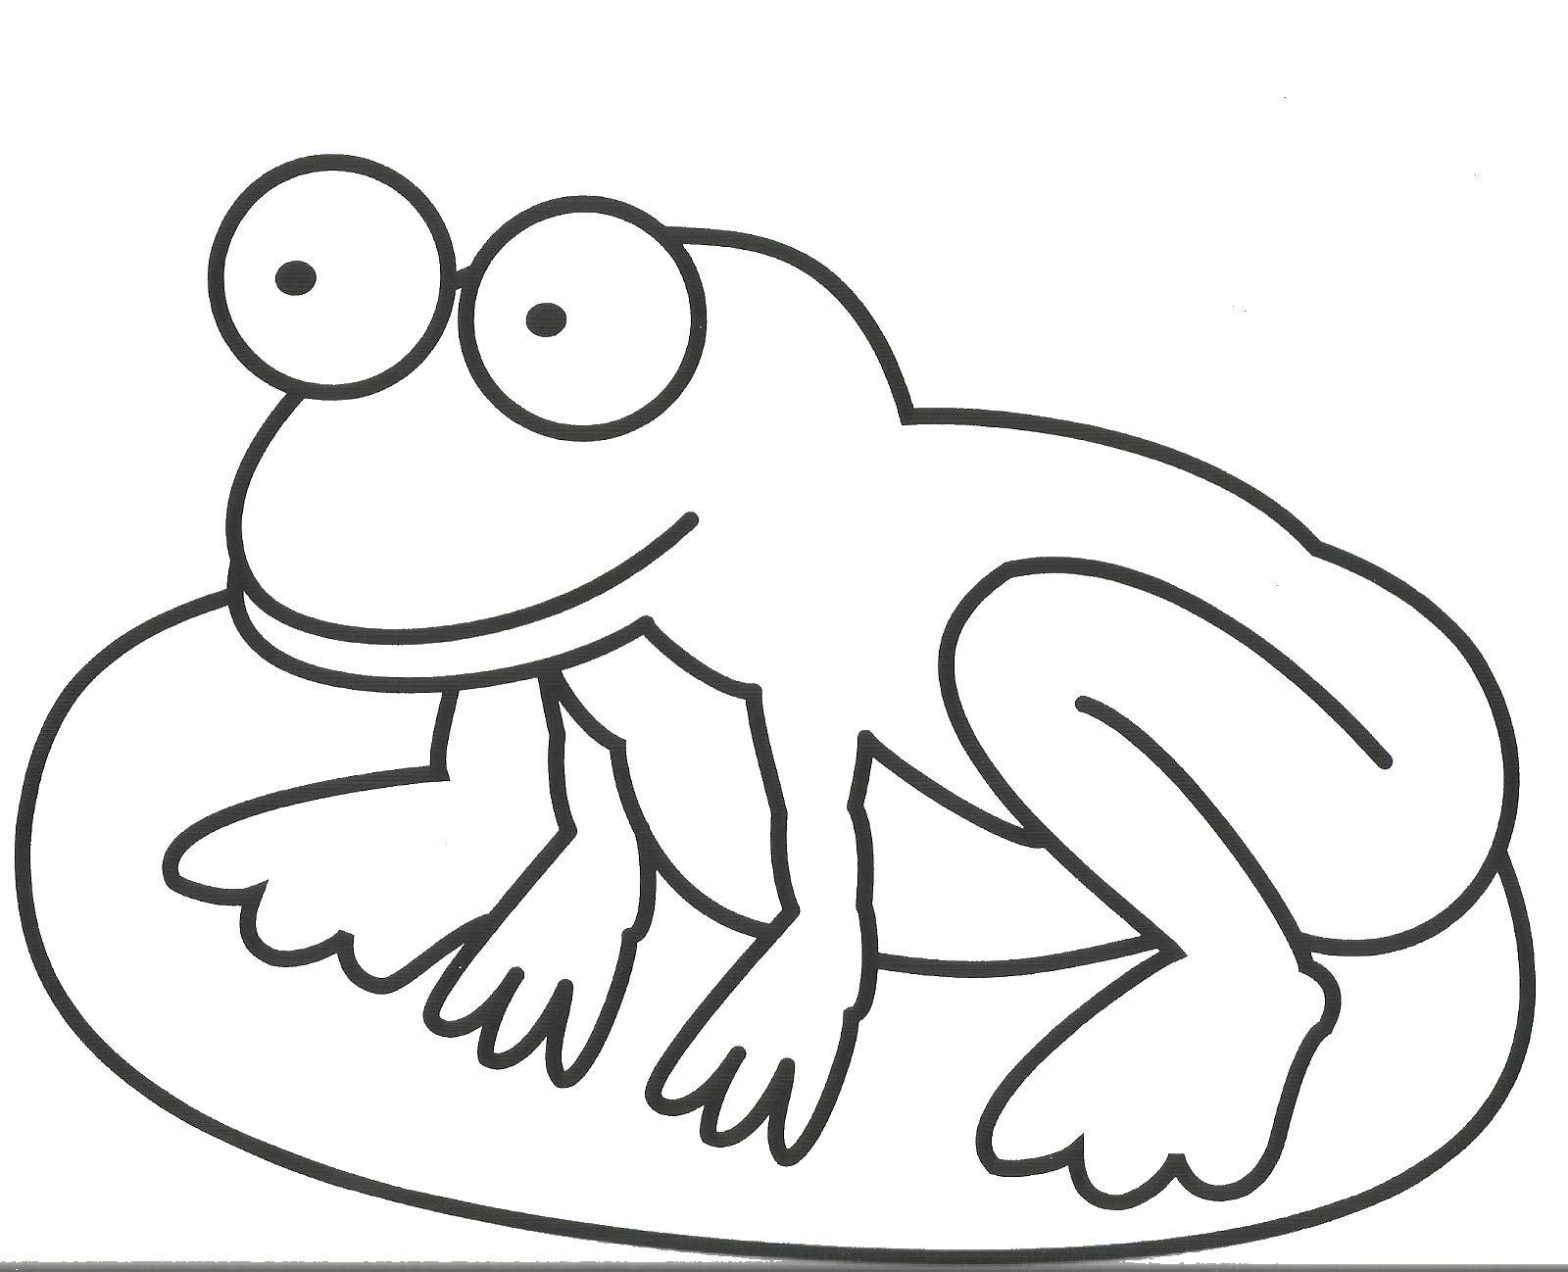 Раскраска земноводных - лягушка на камне для детей (лягушка, камень)